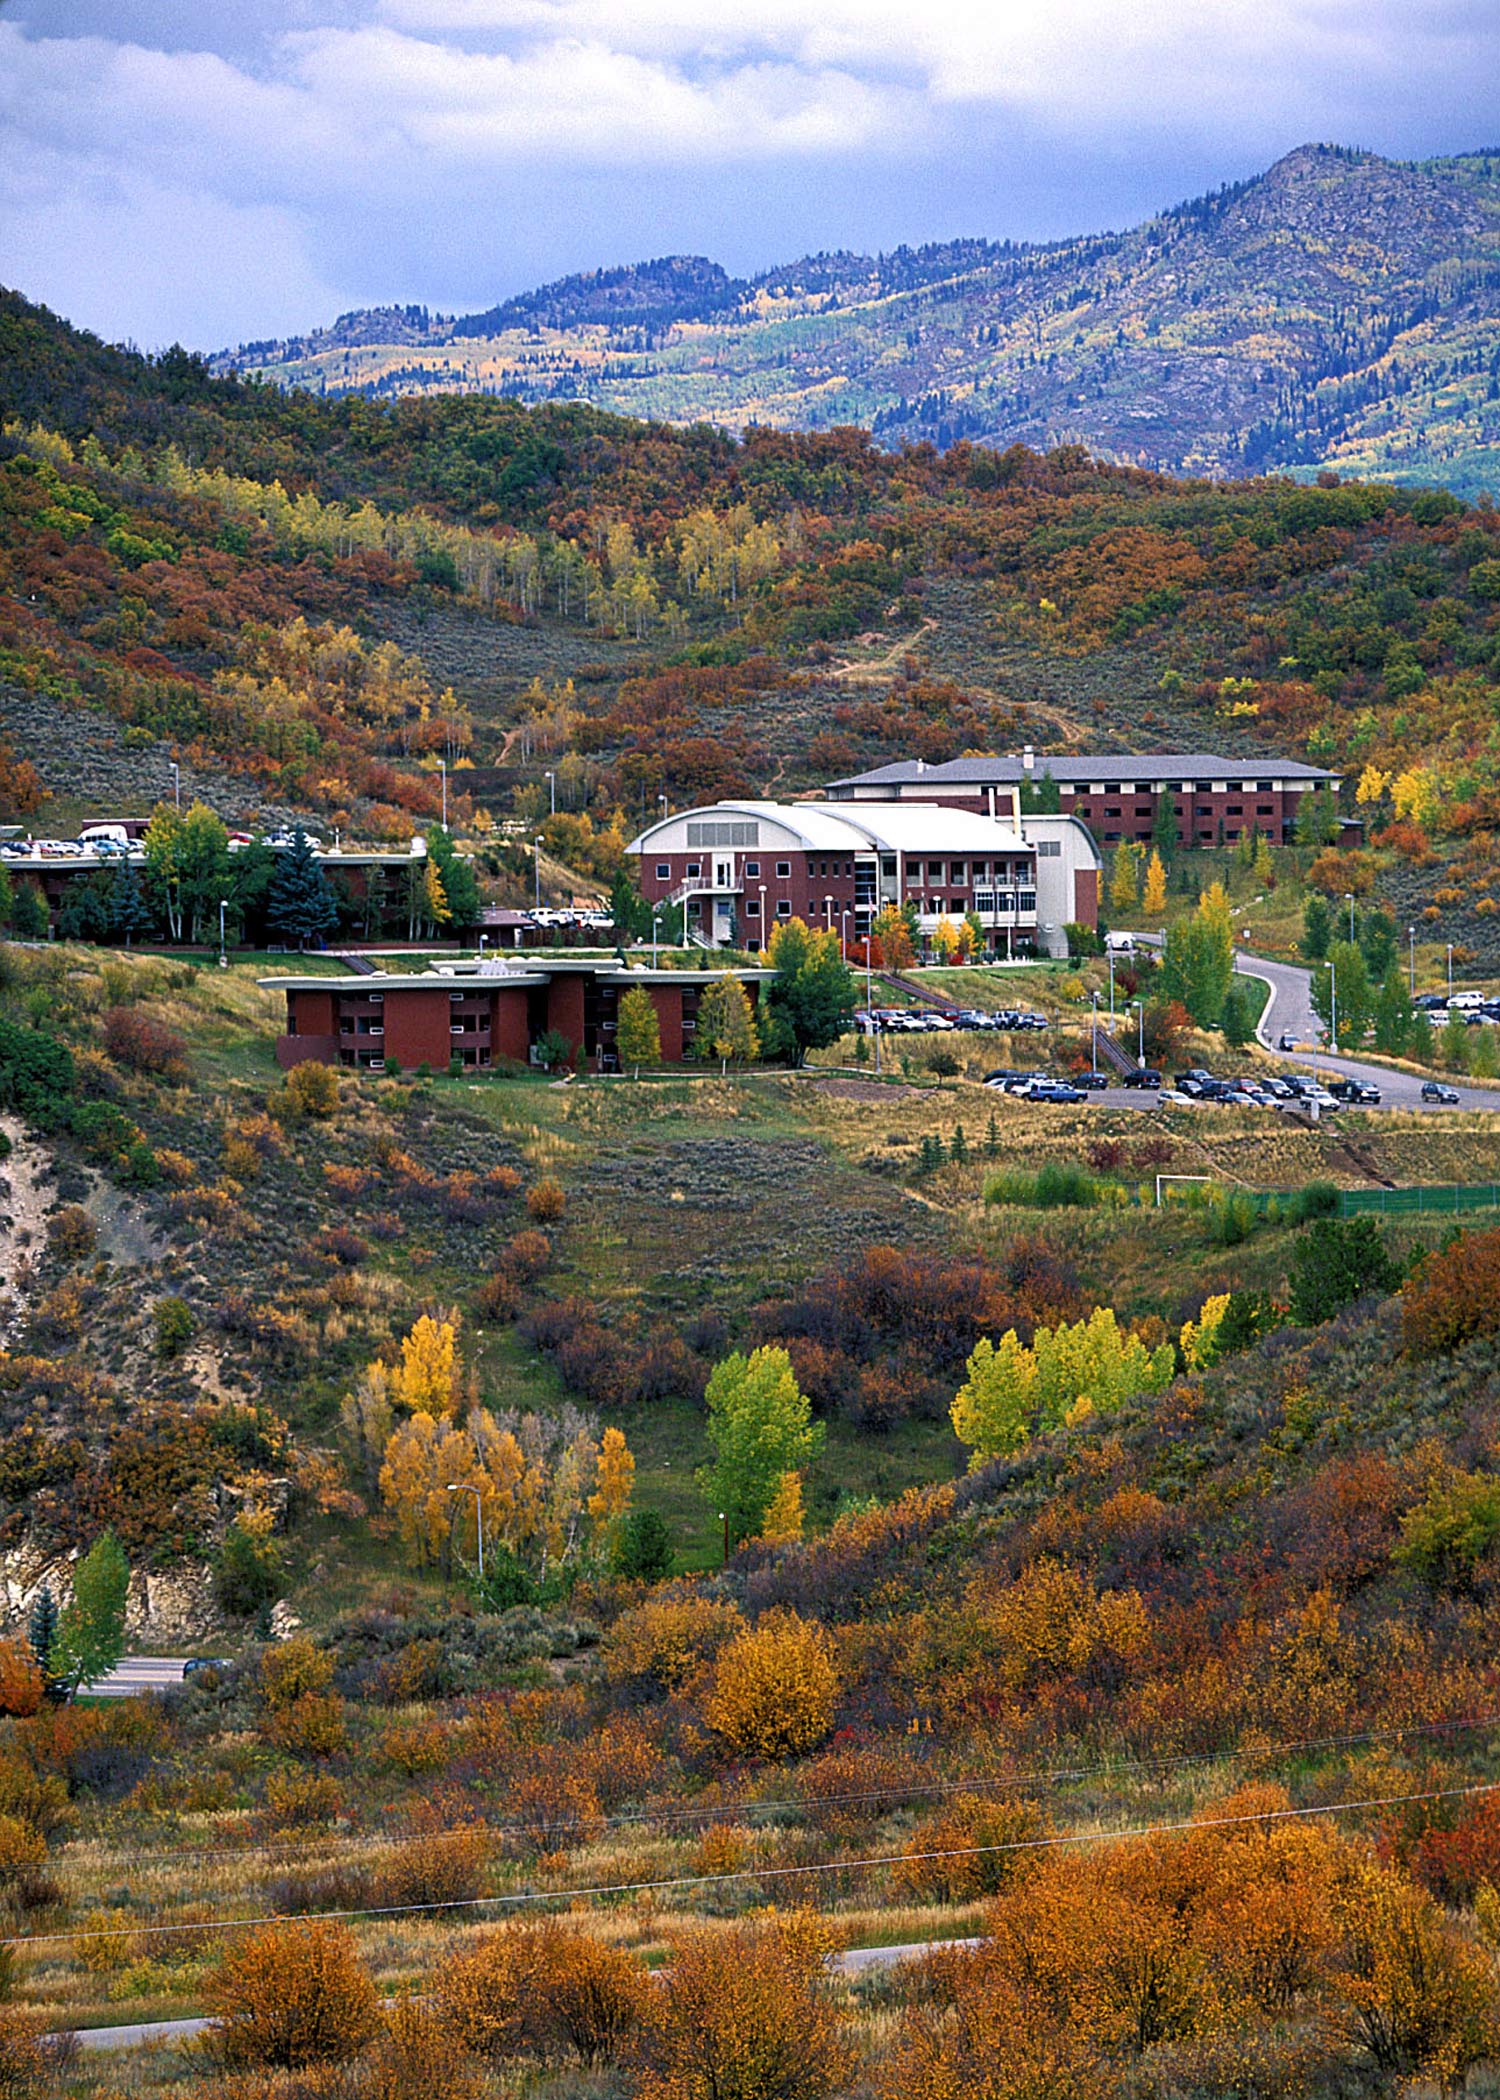 科罗拉多学院, 科罗拉多州, Colorado College, Colorado